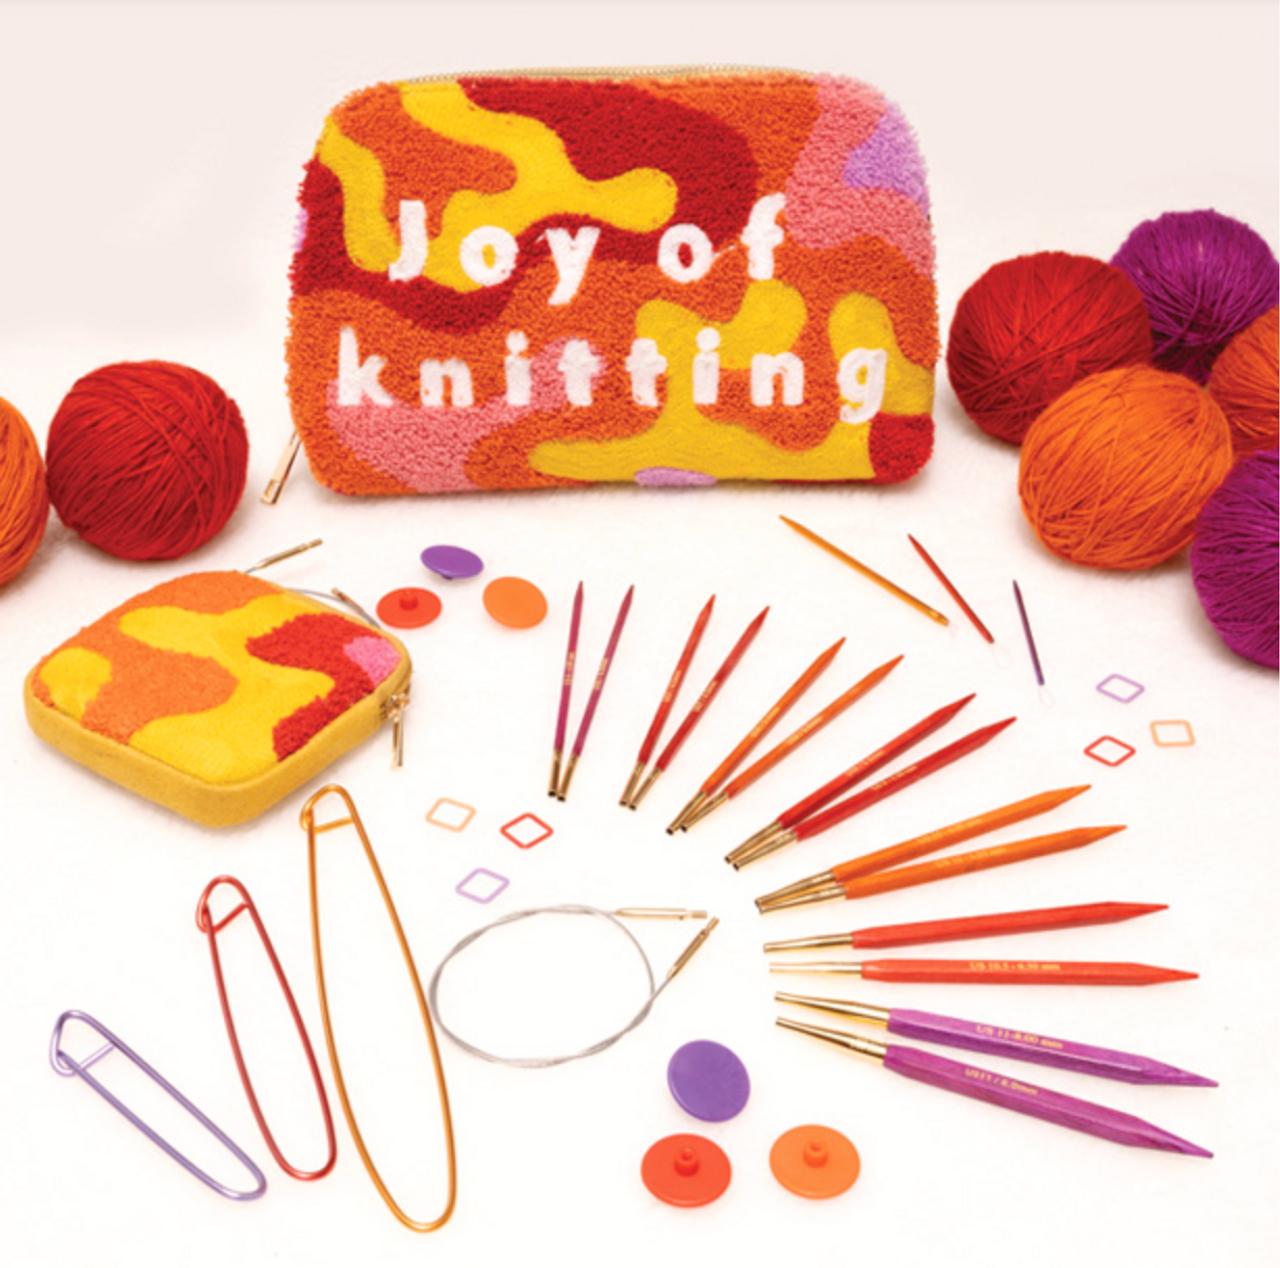 Knitter&s Pride Cubics Deluxe Interchangeable Needles Set